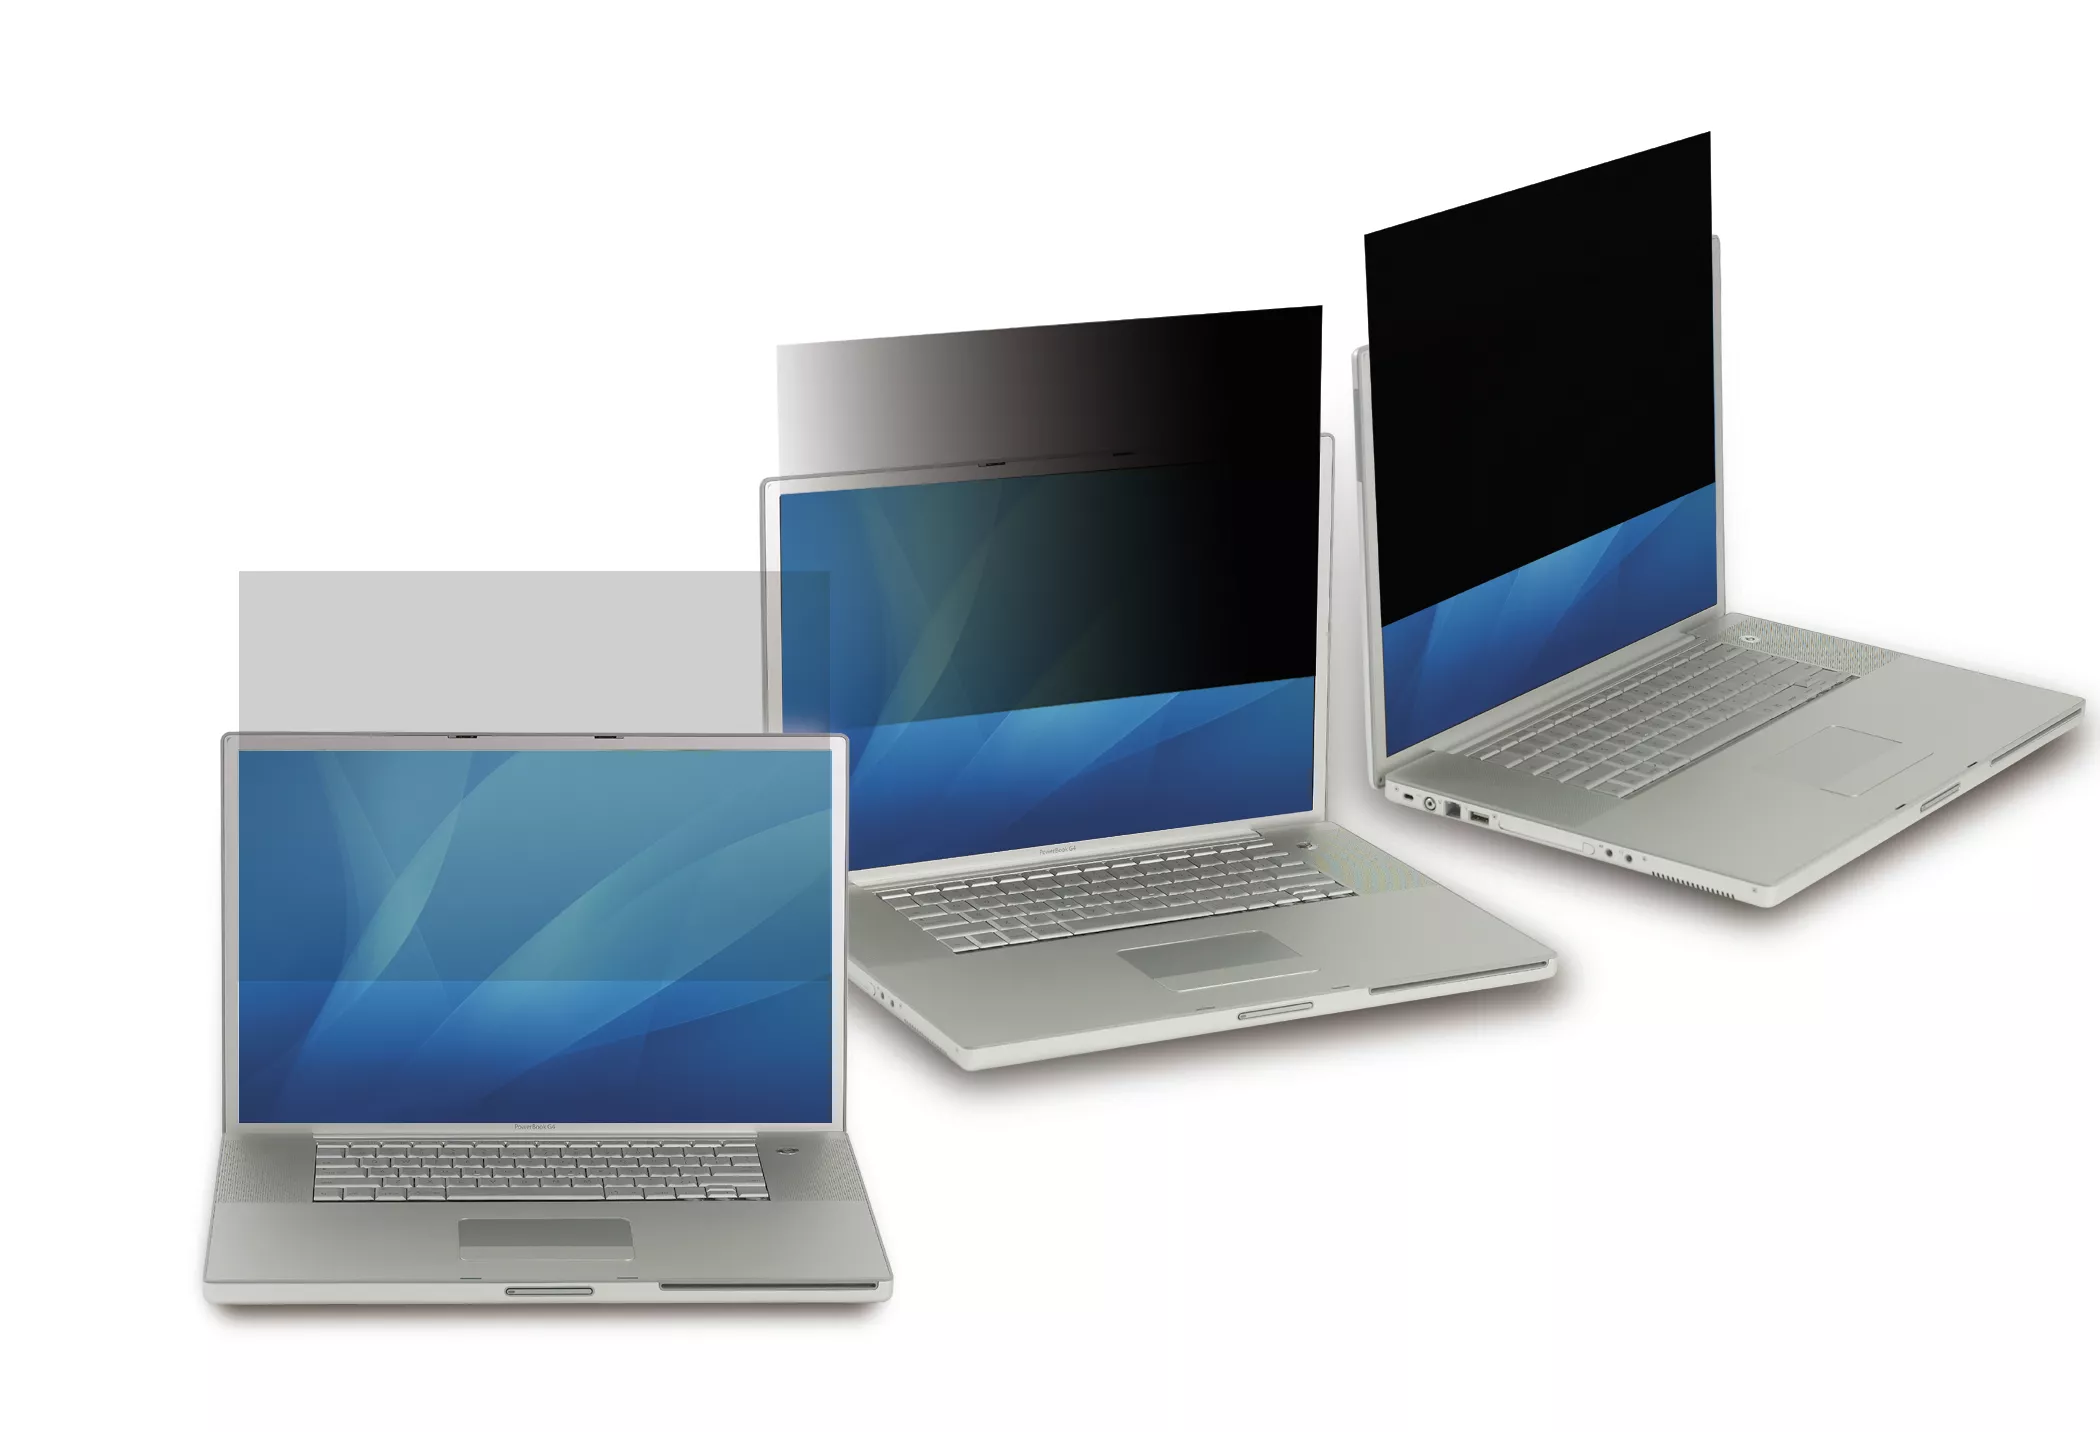 Vente 3M Privacy Filter for HP EliteBook 840 G1/G2 3M au meilleur prix - visuel 2